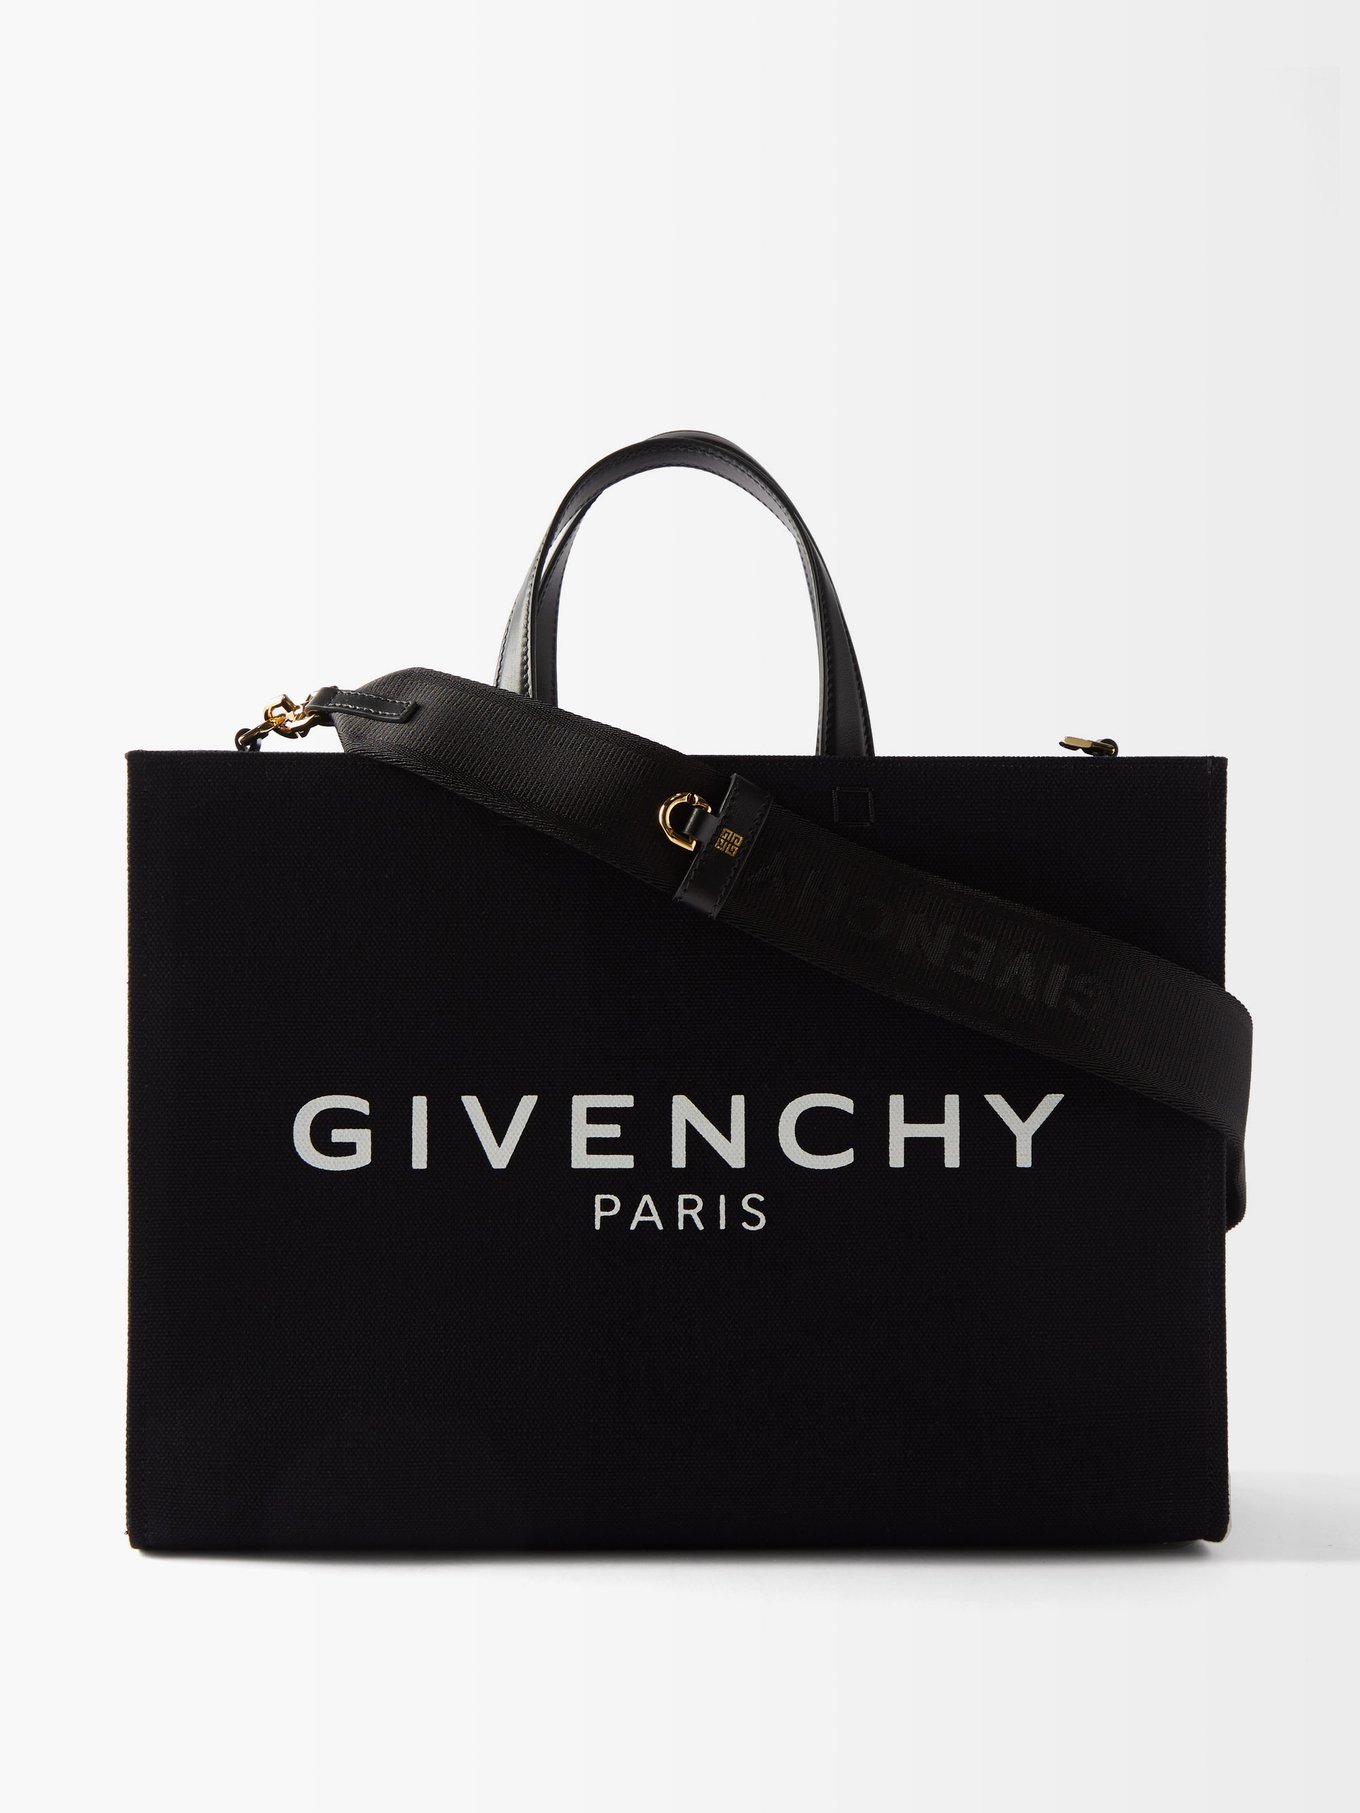 Givenchy ジバンシィ G ミディアム キャンバストートバッグ ブラック 